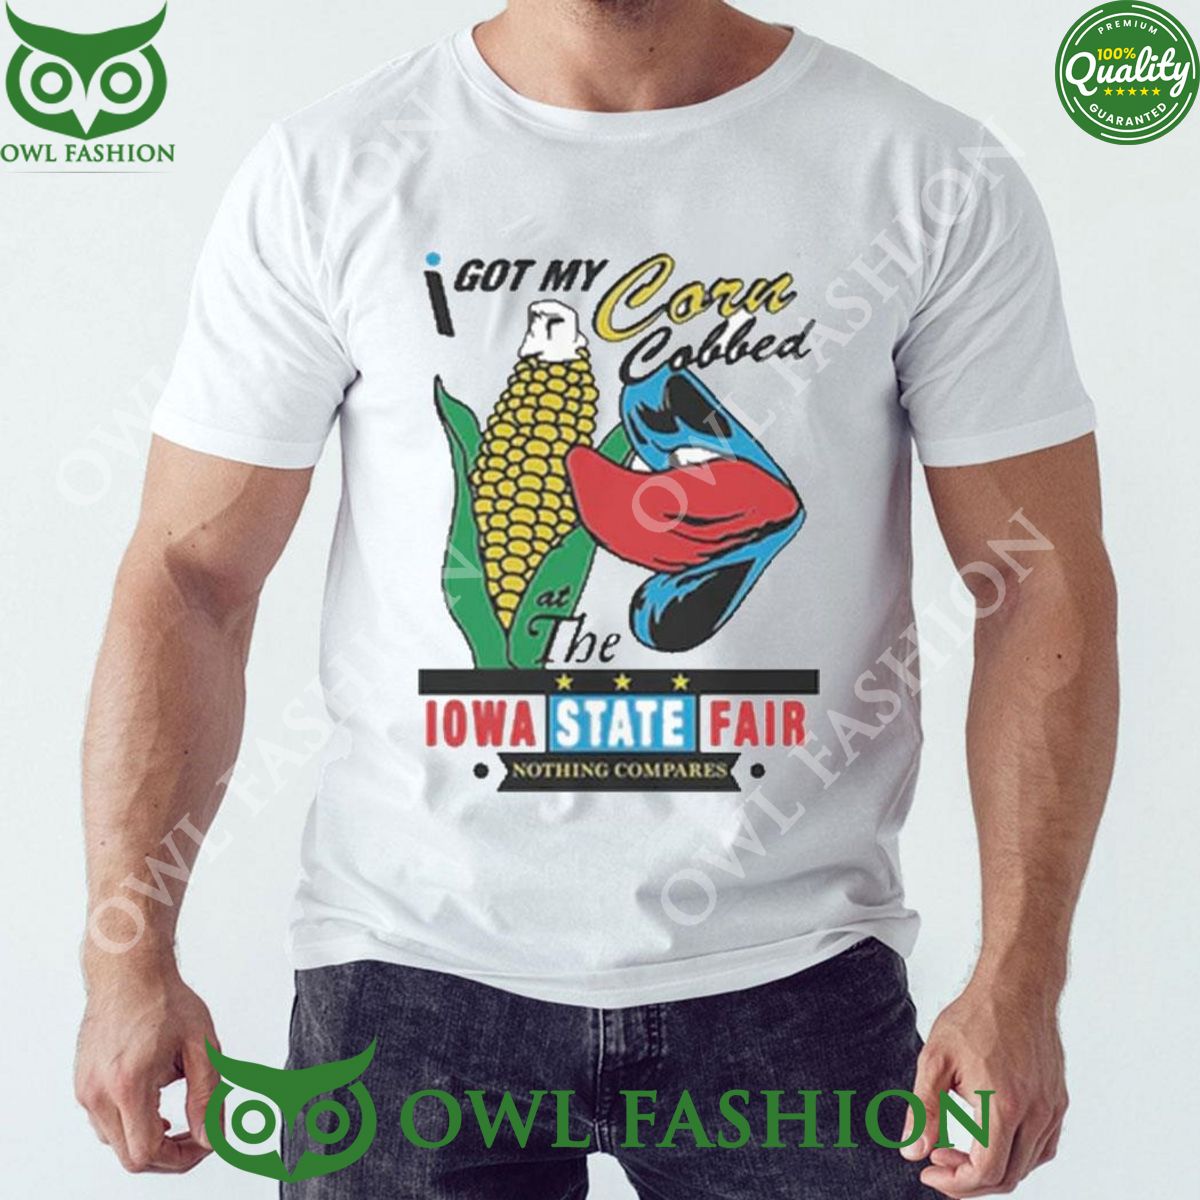 at the iowa state fair i got my corn cobbed 2024 tshirt 1 elMur.jpg